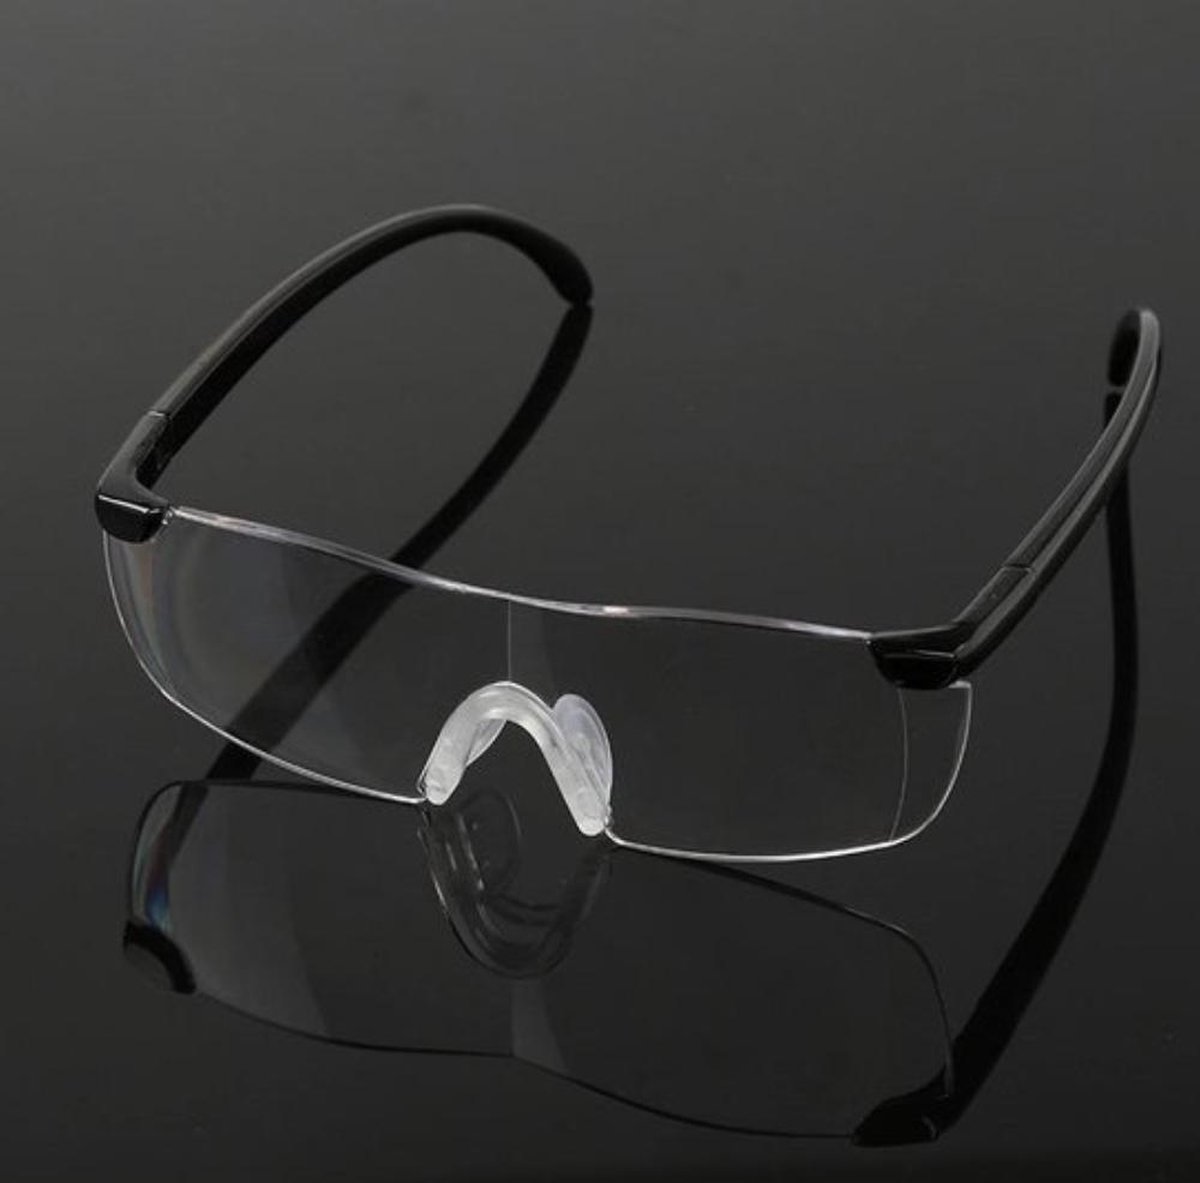 Vergrootglas bril - loepbril - 160% vergrotend - extreem helder glas voor perfect zicht - Bril met vergrotende functie - vergrootbril - bril- - geen m